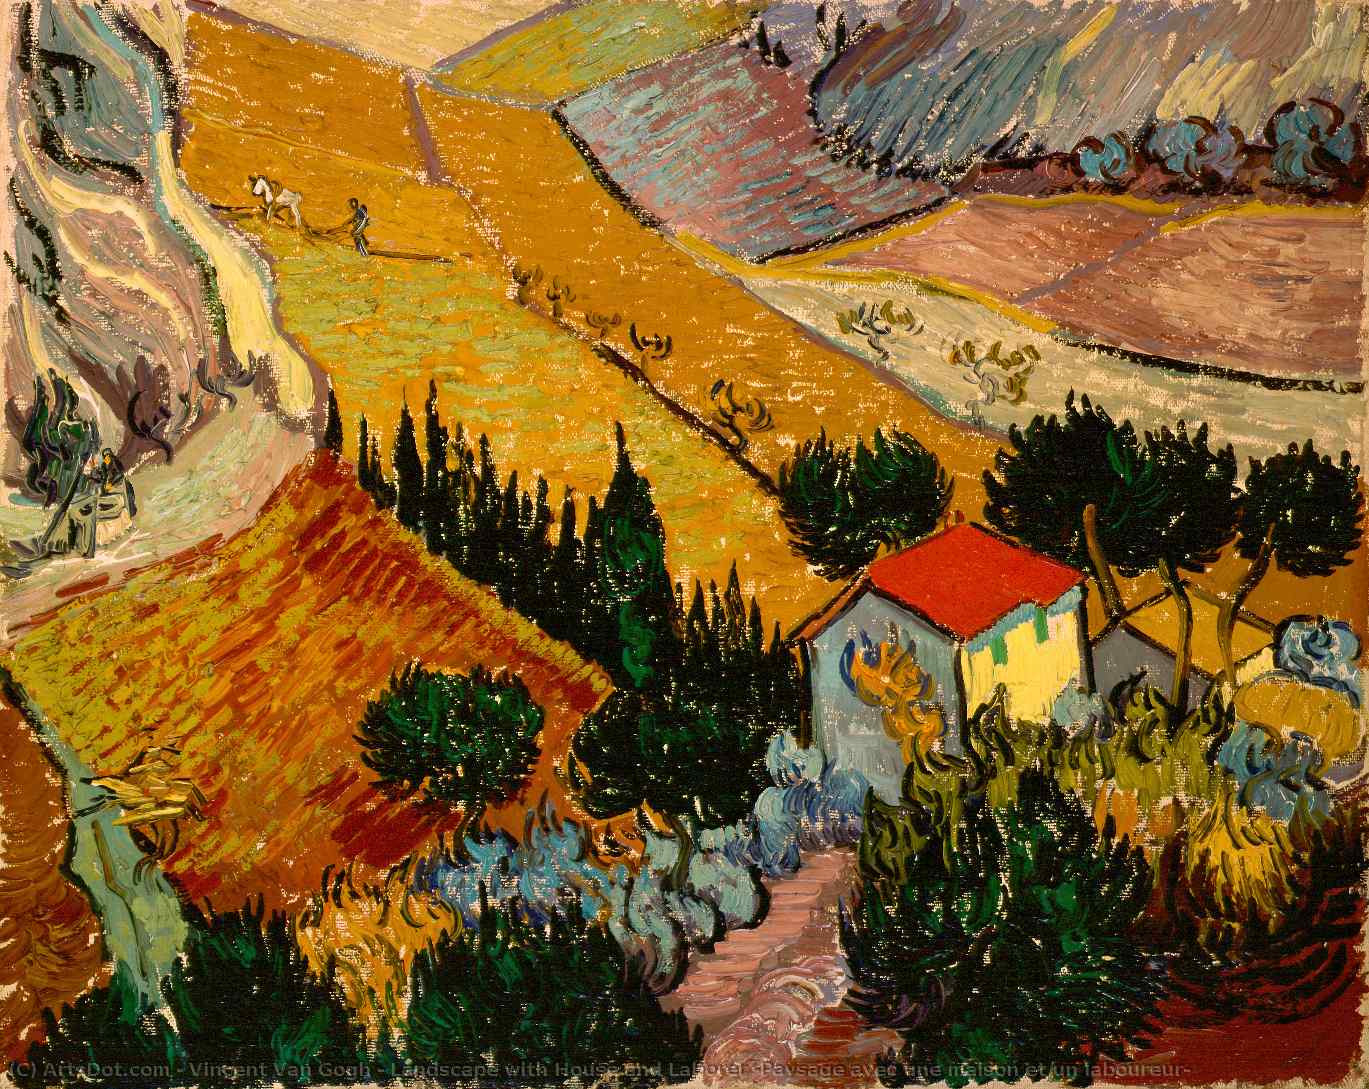 WikiOO.org - Encyclopedia of Fine Arts - Maleri, Artwork Vincent Van Gogh - Landscape with House and Laborer (Paysage avec une maison et un laboureur)